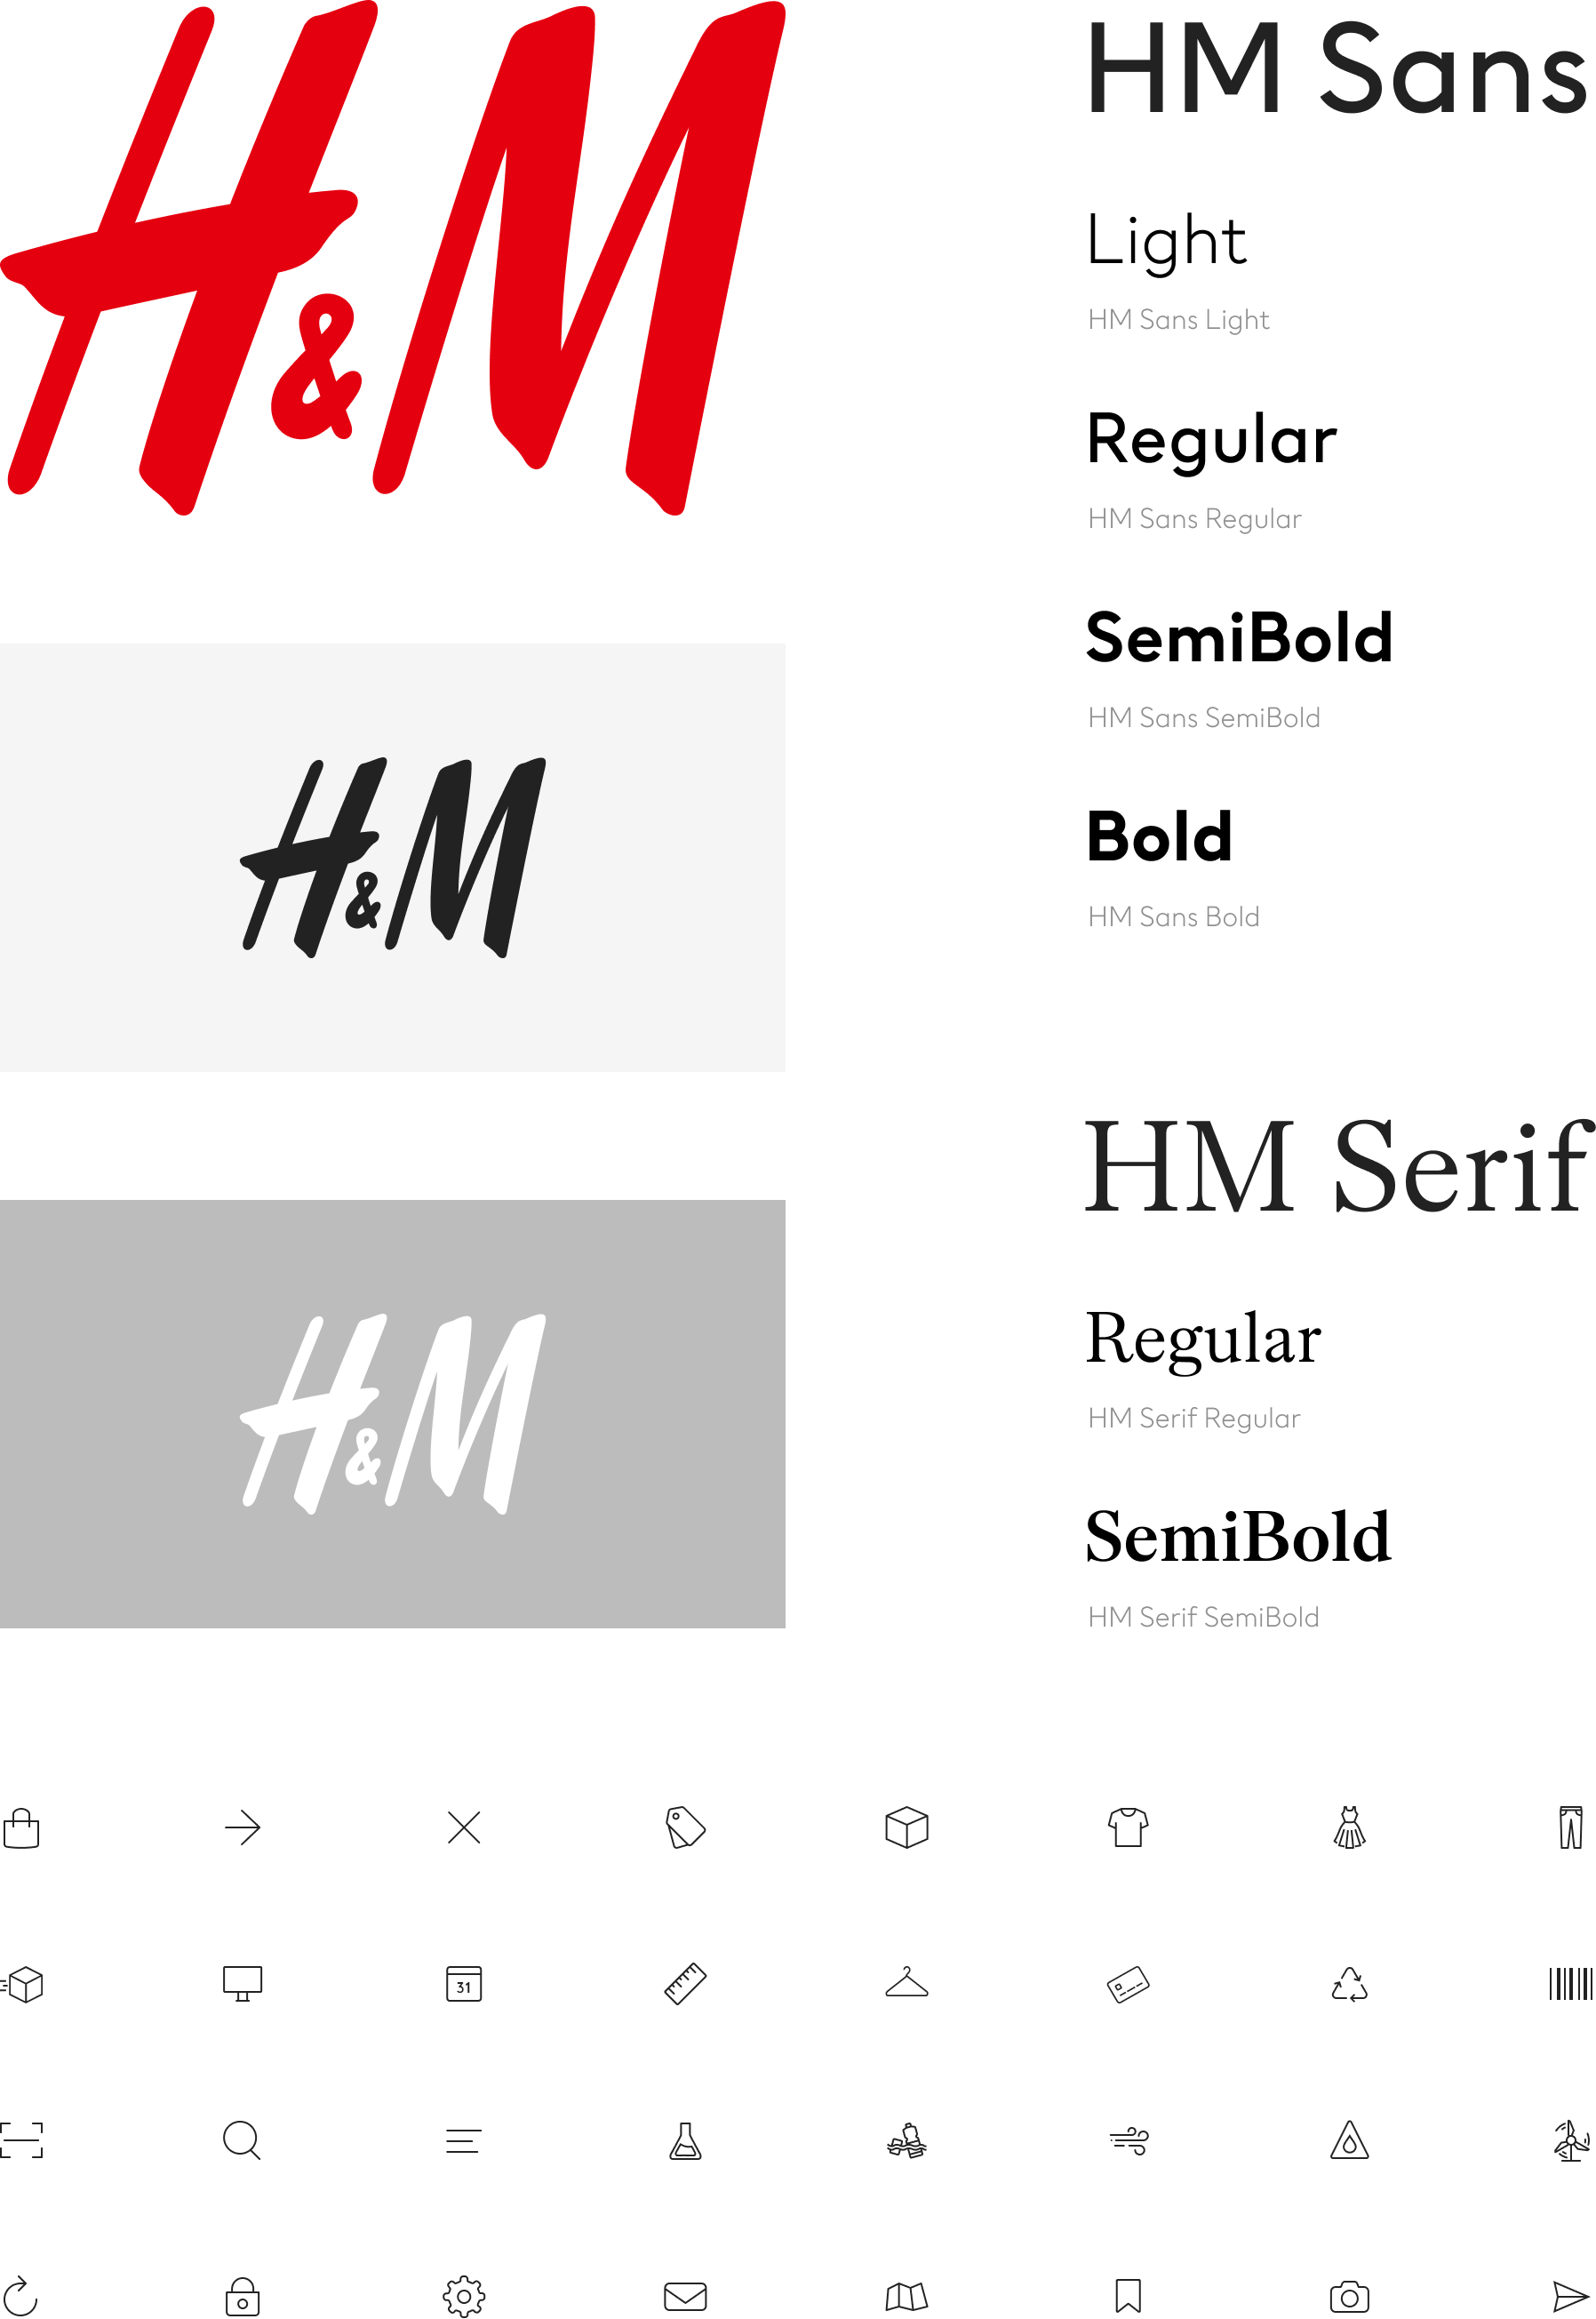 hm-brandidentity-left@2x-1